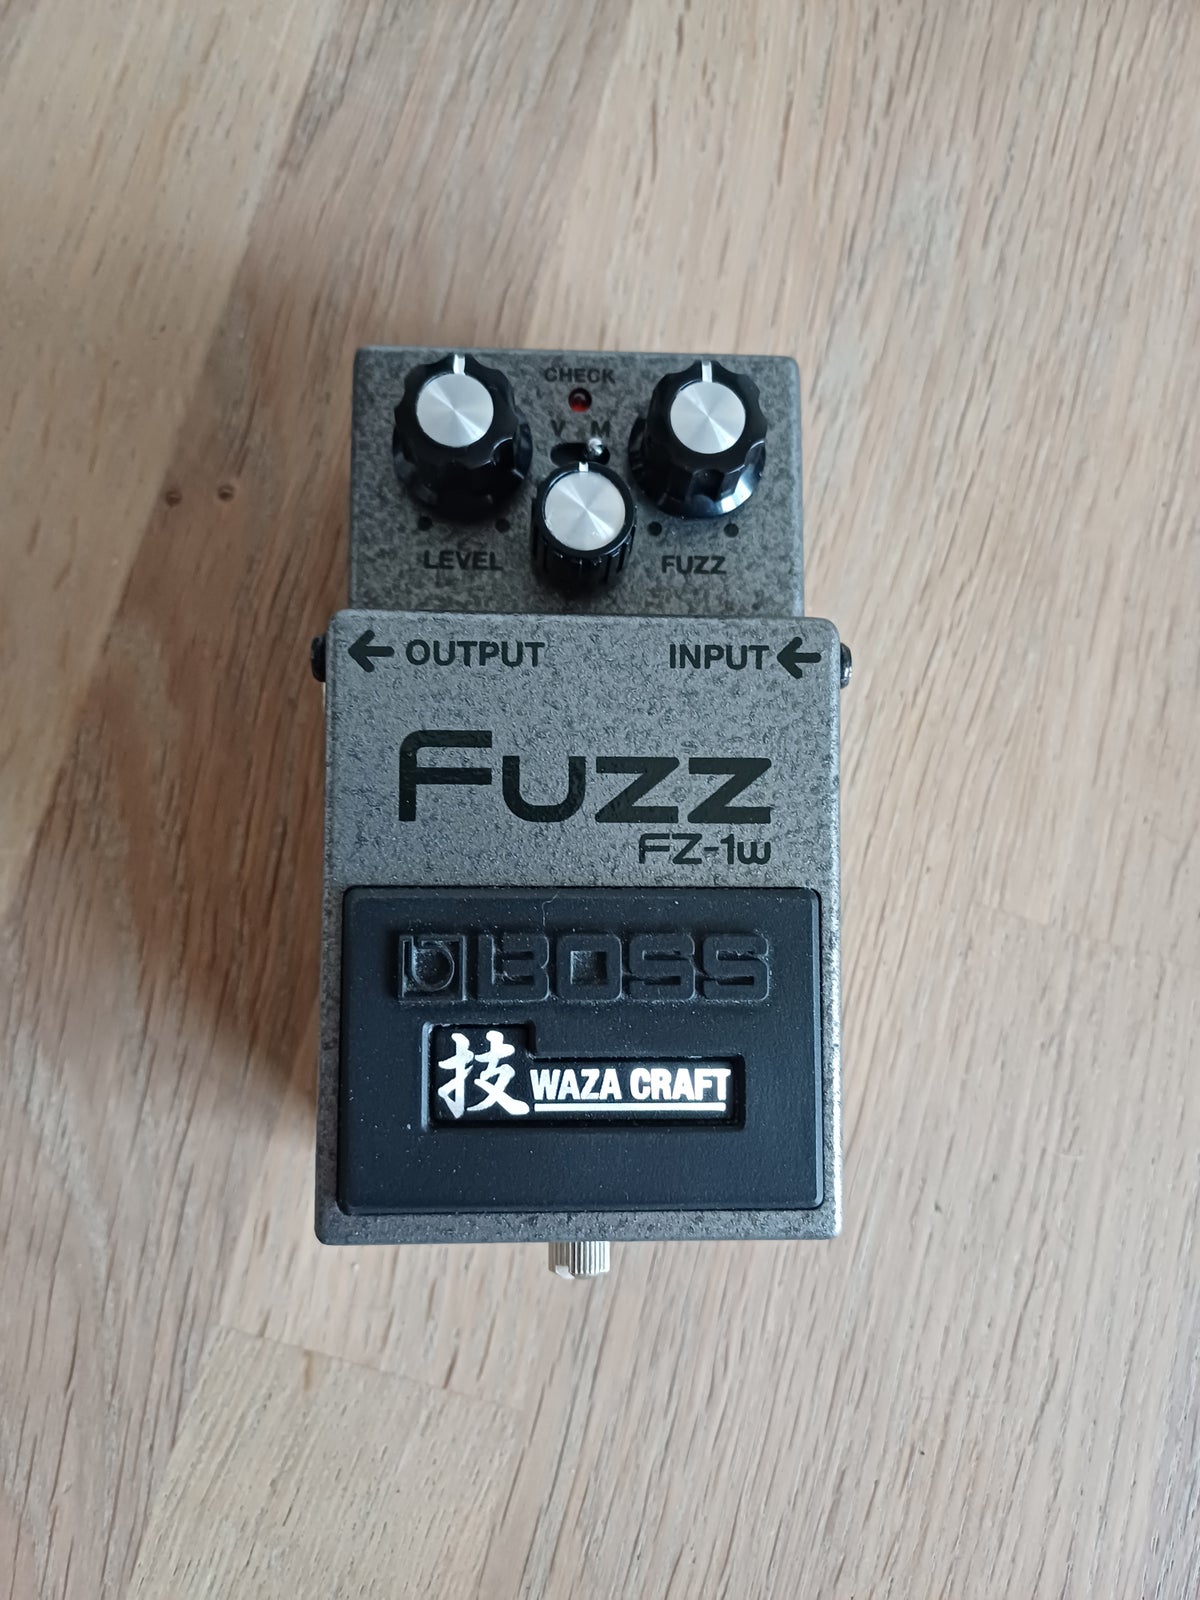 Fuzz pedal, Boss FZ-1w Fuzz